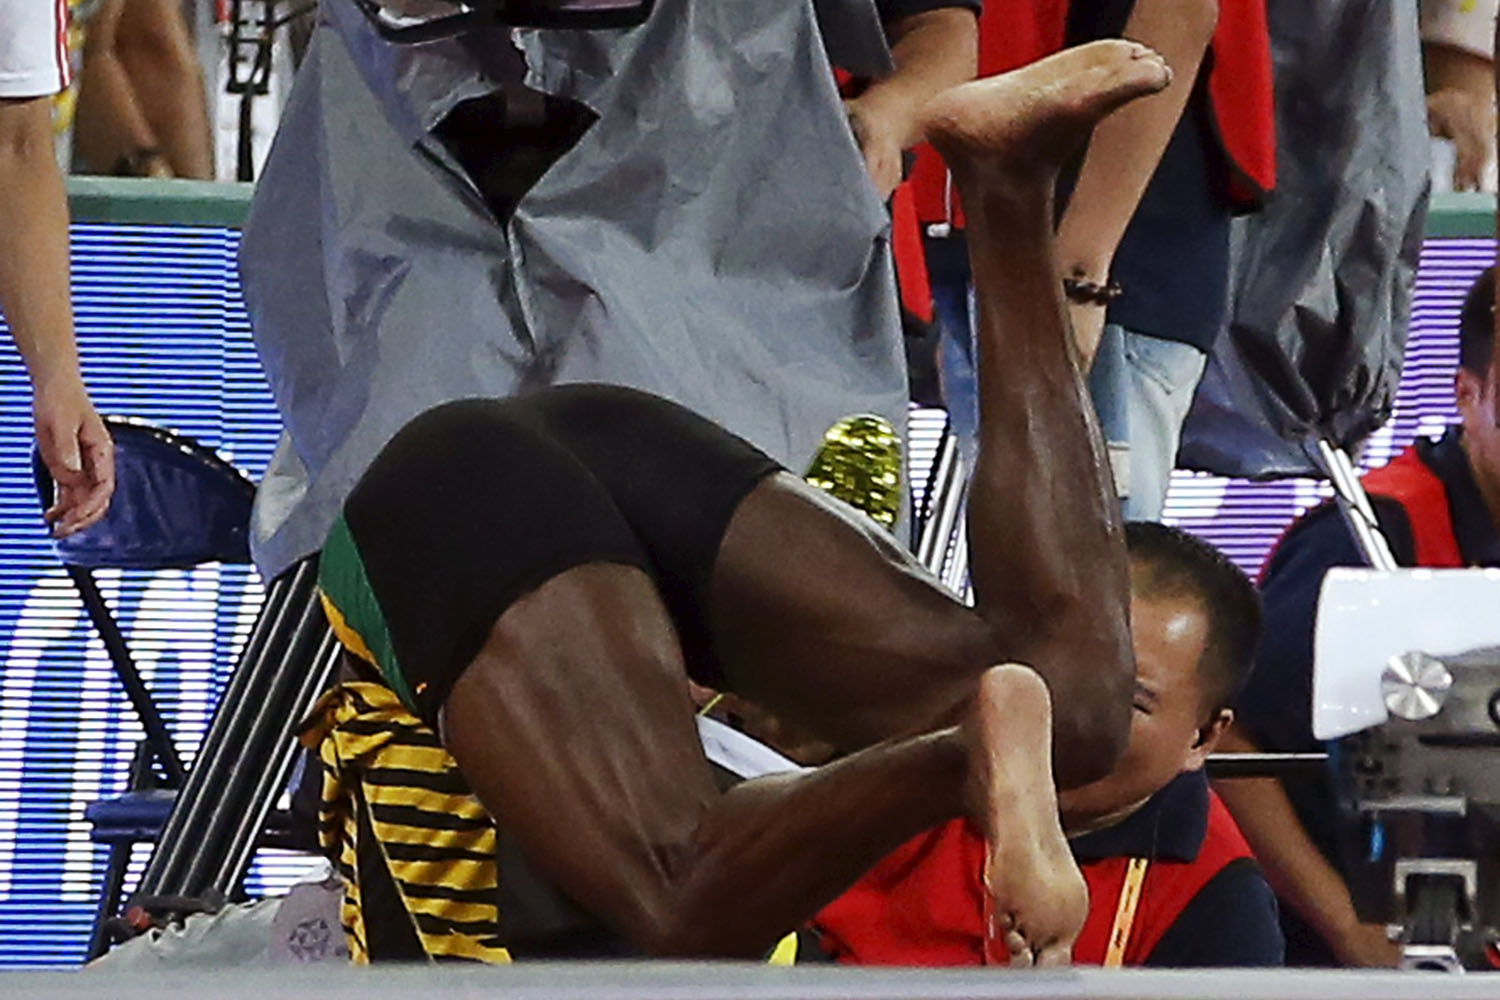 Espectacular choque de Bolt contra un cámara